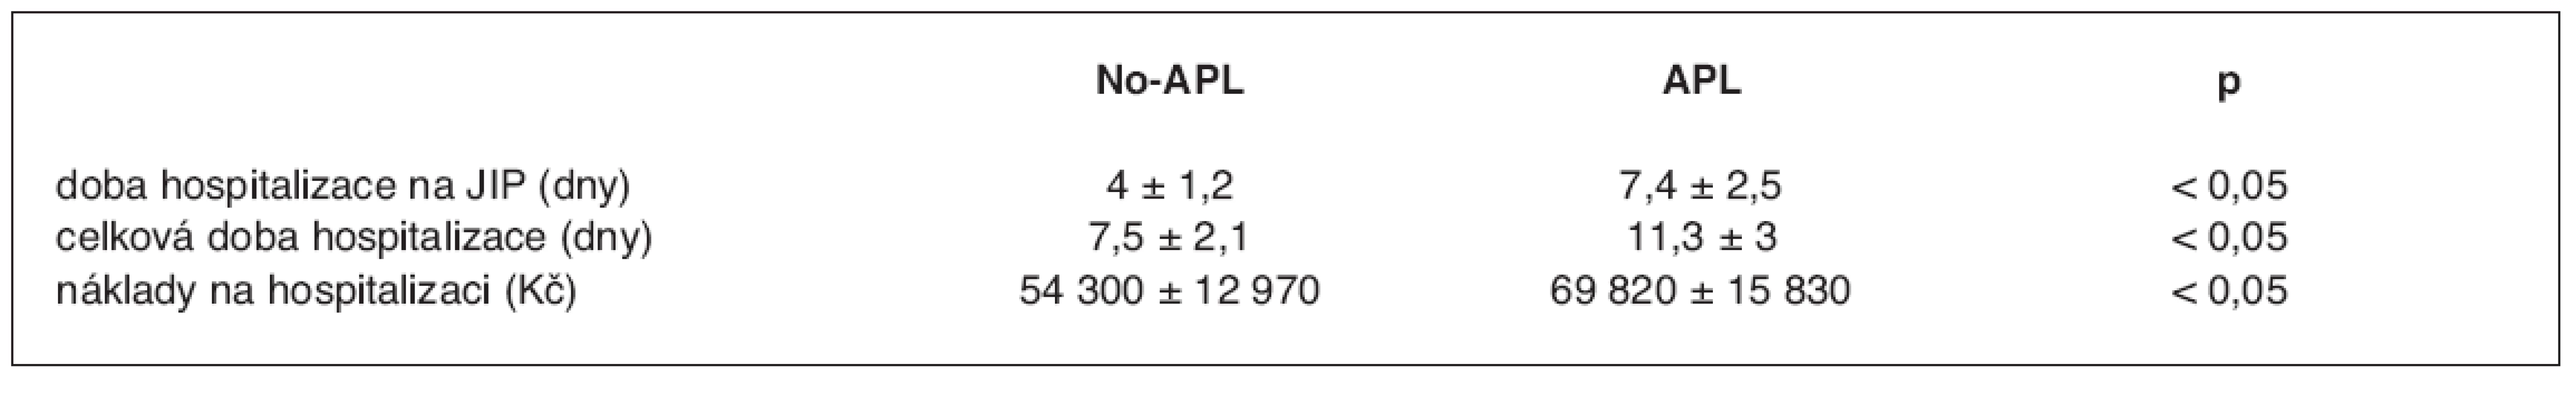 Porovnání doby hospitalizace a nákladů u pacientů s APL